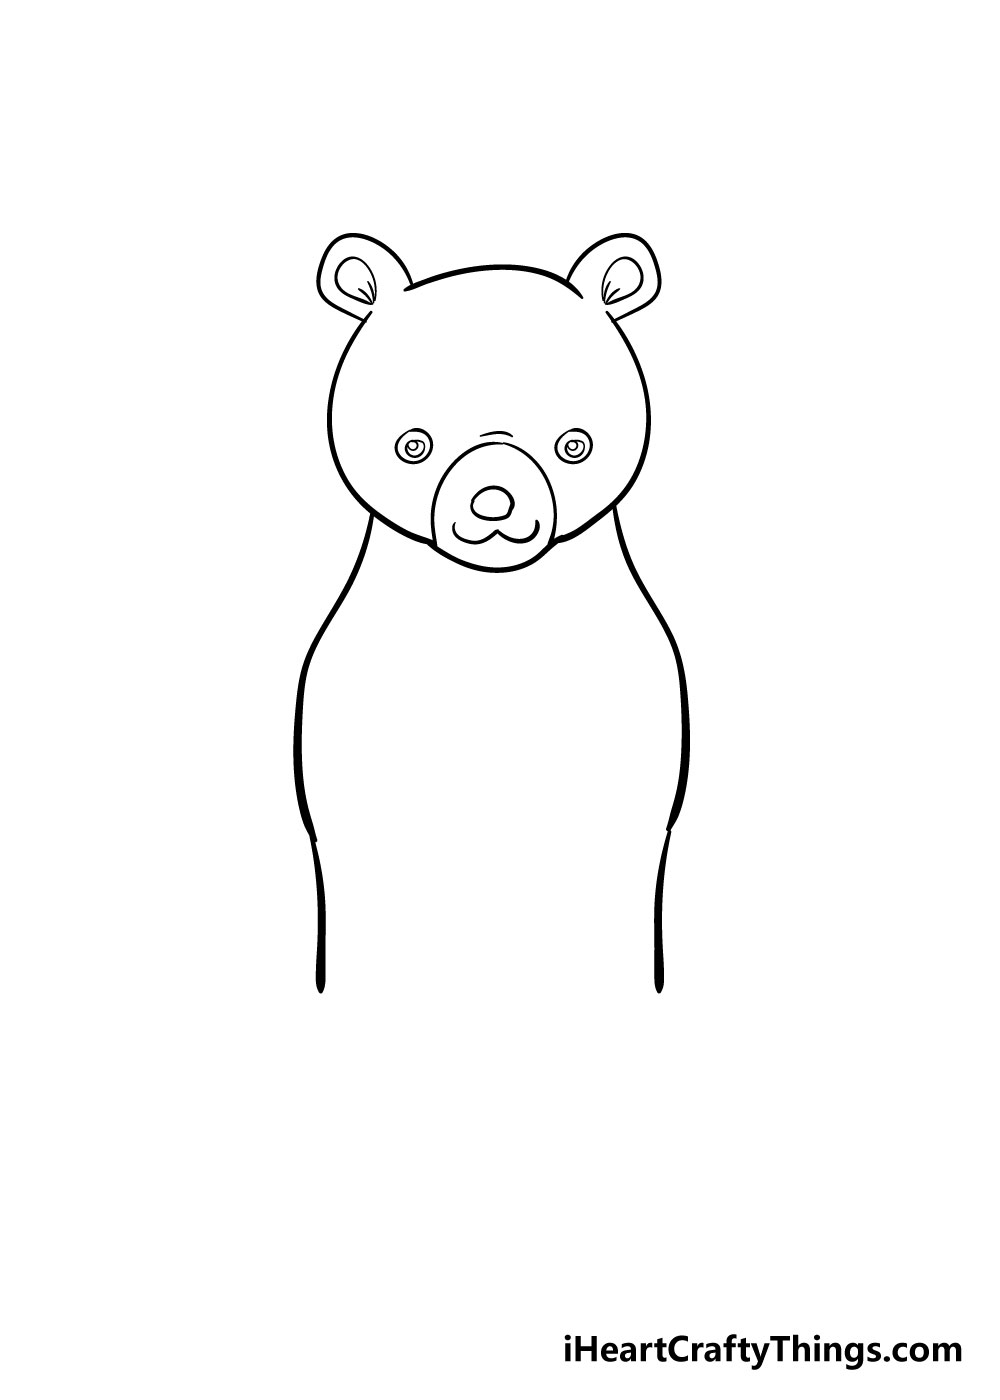 10 Cách Vẽ Chú Gấu Đơn Giản Mà Đẹp Rất Sinh Động Dành Cho Bé